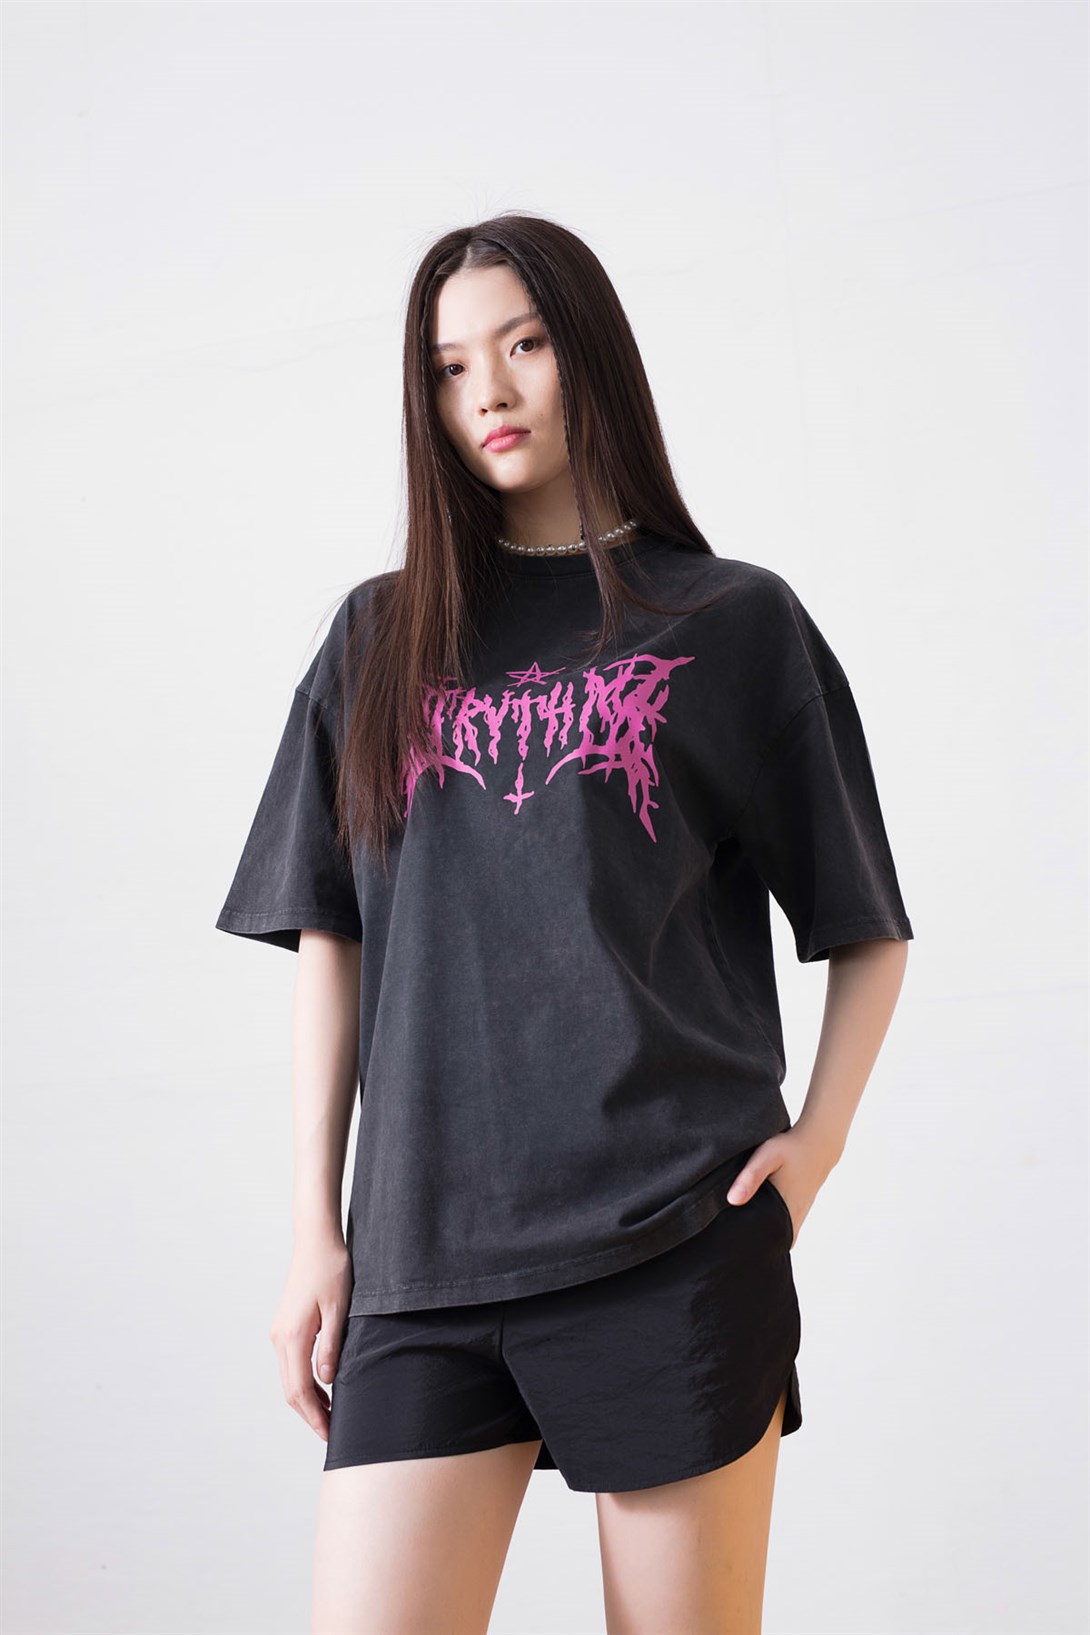 Trendiz Unisex Gothic Harajuku Antrasit Tshirt